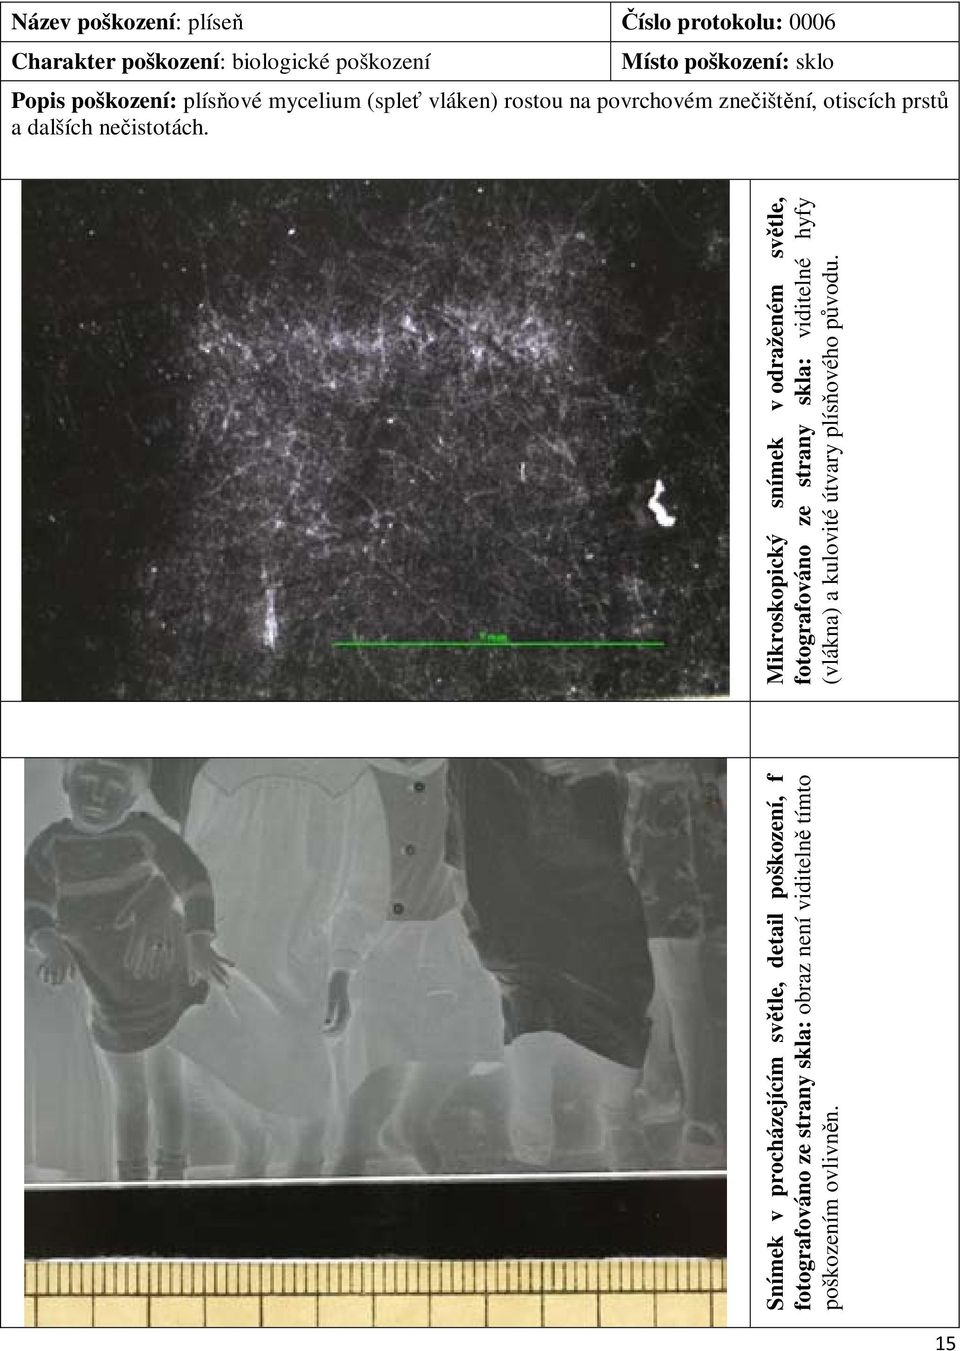 Snímek v procházejícím světle, detail poškození, f fotografováno ze strany skla: obraz není viditelně tímto poškozením